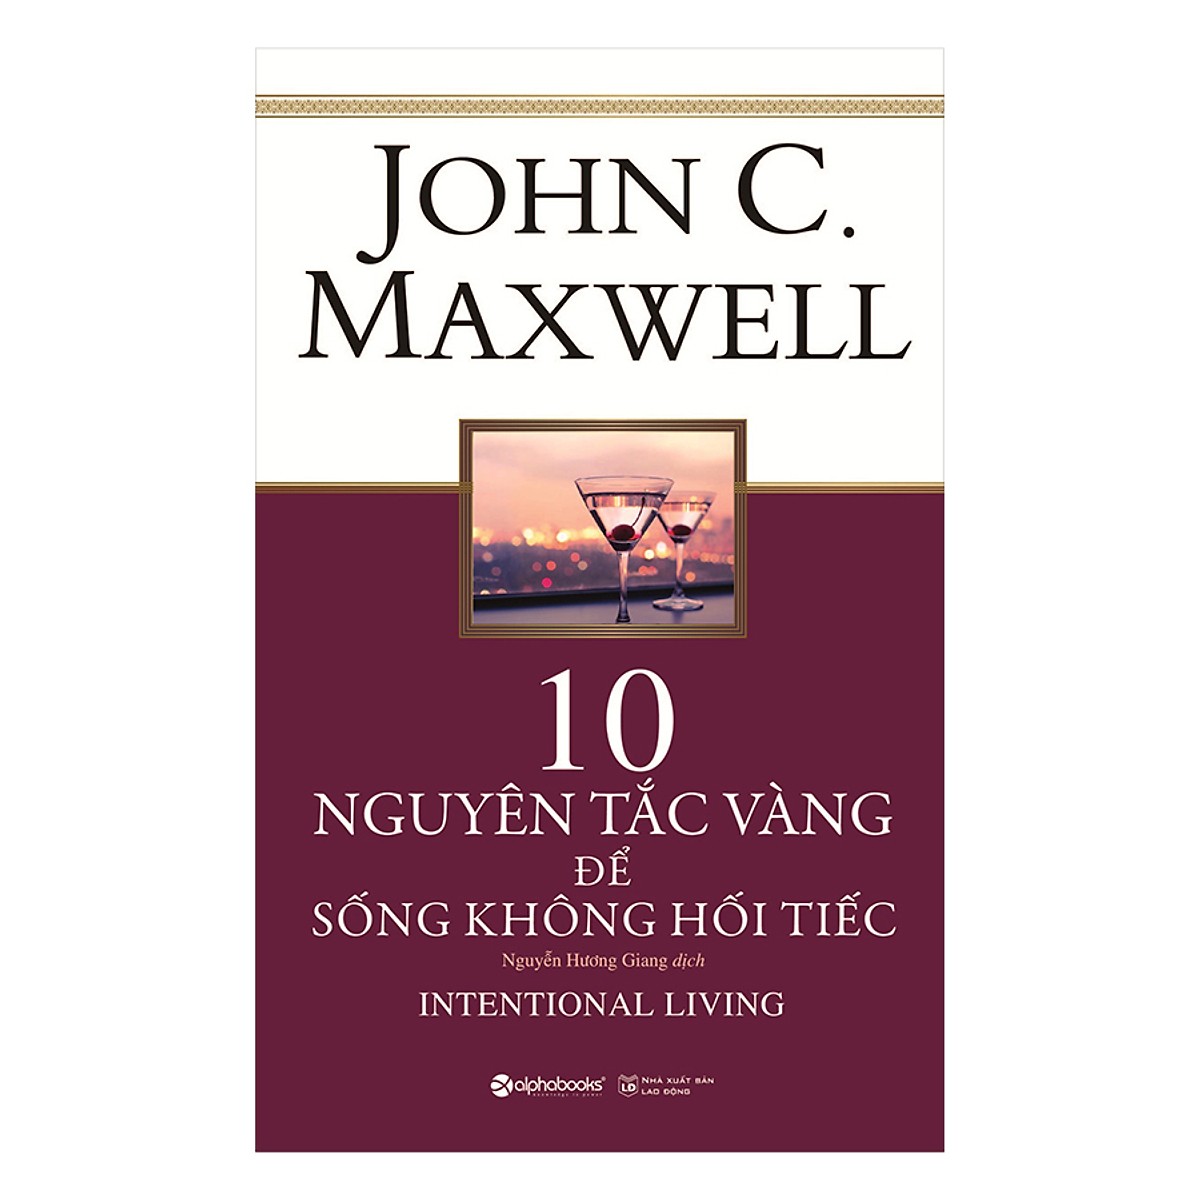 Trọn Bộ Phát Triển Bản Thân Của John Maxwell ( Phát Triển Kỹ Năng Lãnh Đạo + 10 Nguyên Tắc Vàng Để Sống Không Hối Tiếc + 15 Nguyên Tắc Vàng Về Phát Triển Bản Thân + Dám Ước Mơ, Biết Thực Hiện + Không Giới Hạn ) (Tặng Kèm Tickbook)